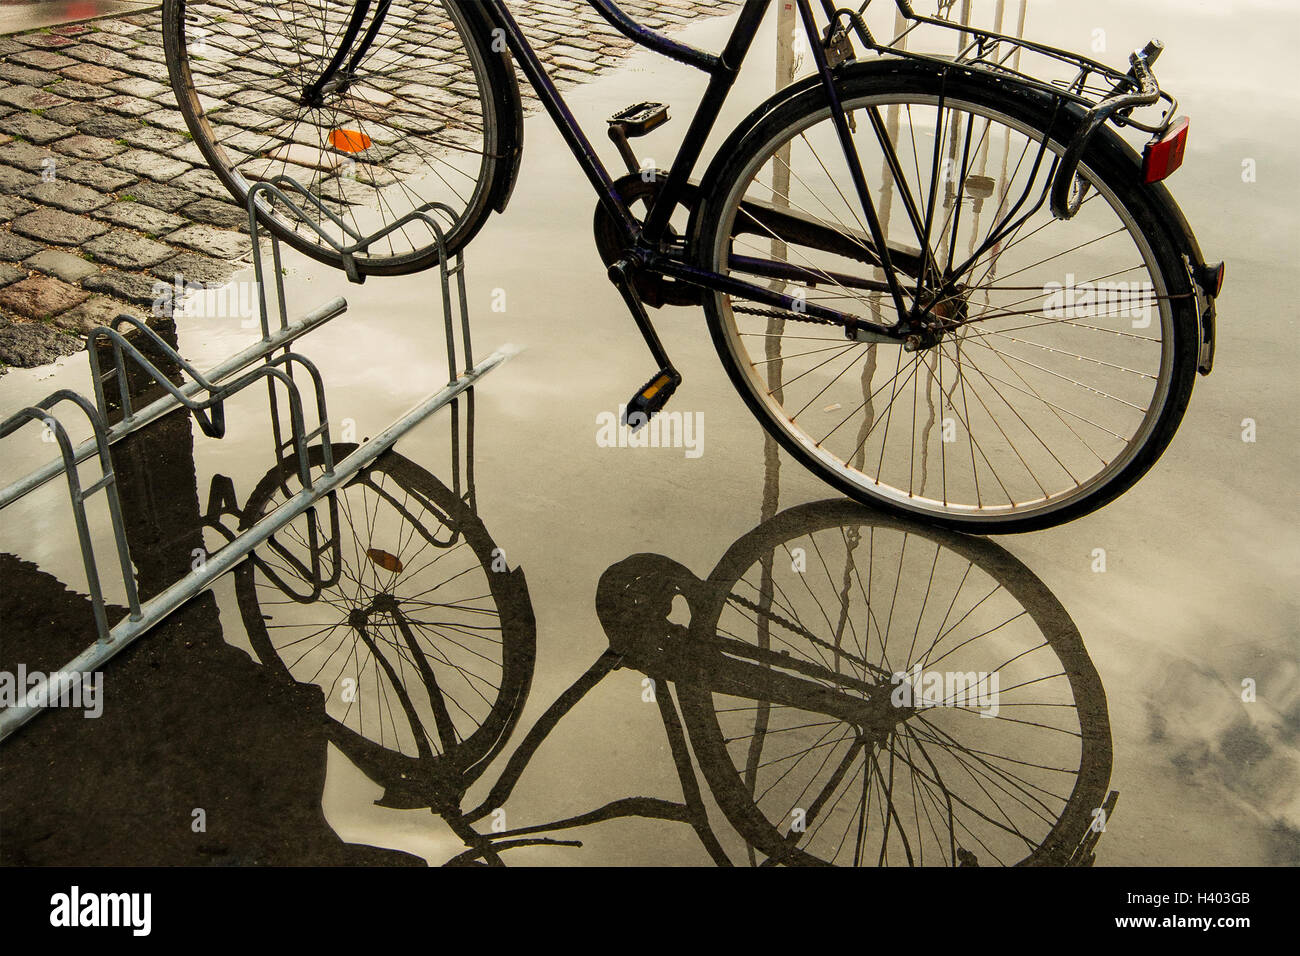 Fahrrad auf Bike Rack Reflexion in Pfütze Wasser abgestellt Stockfoto